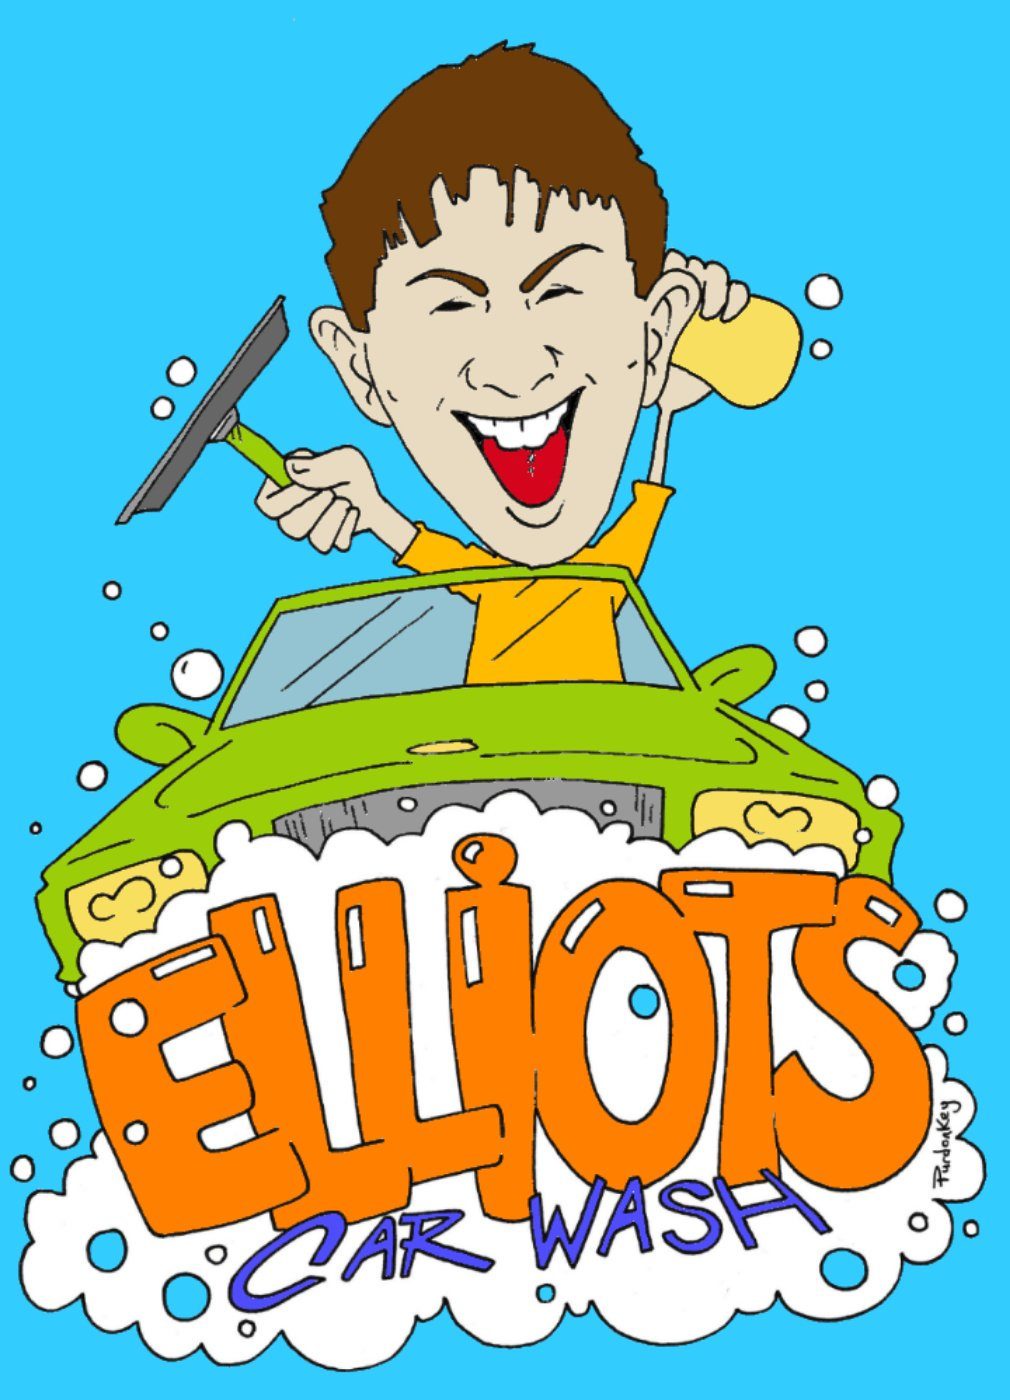 Elliot's Car Wash